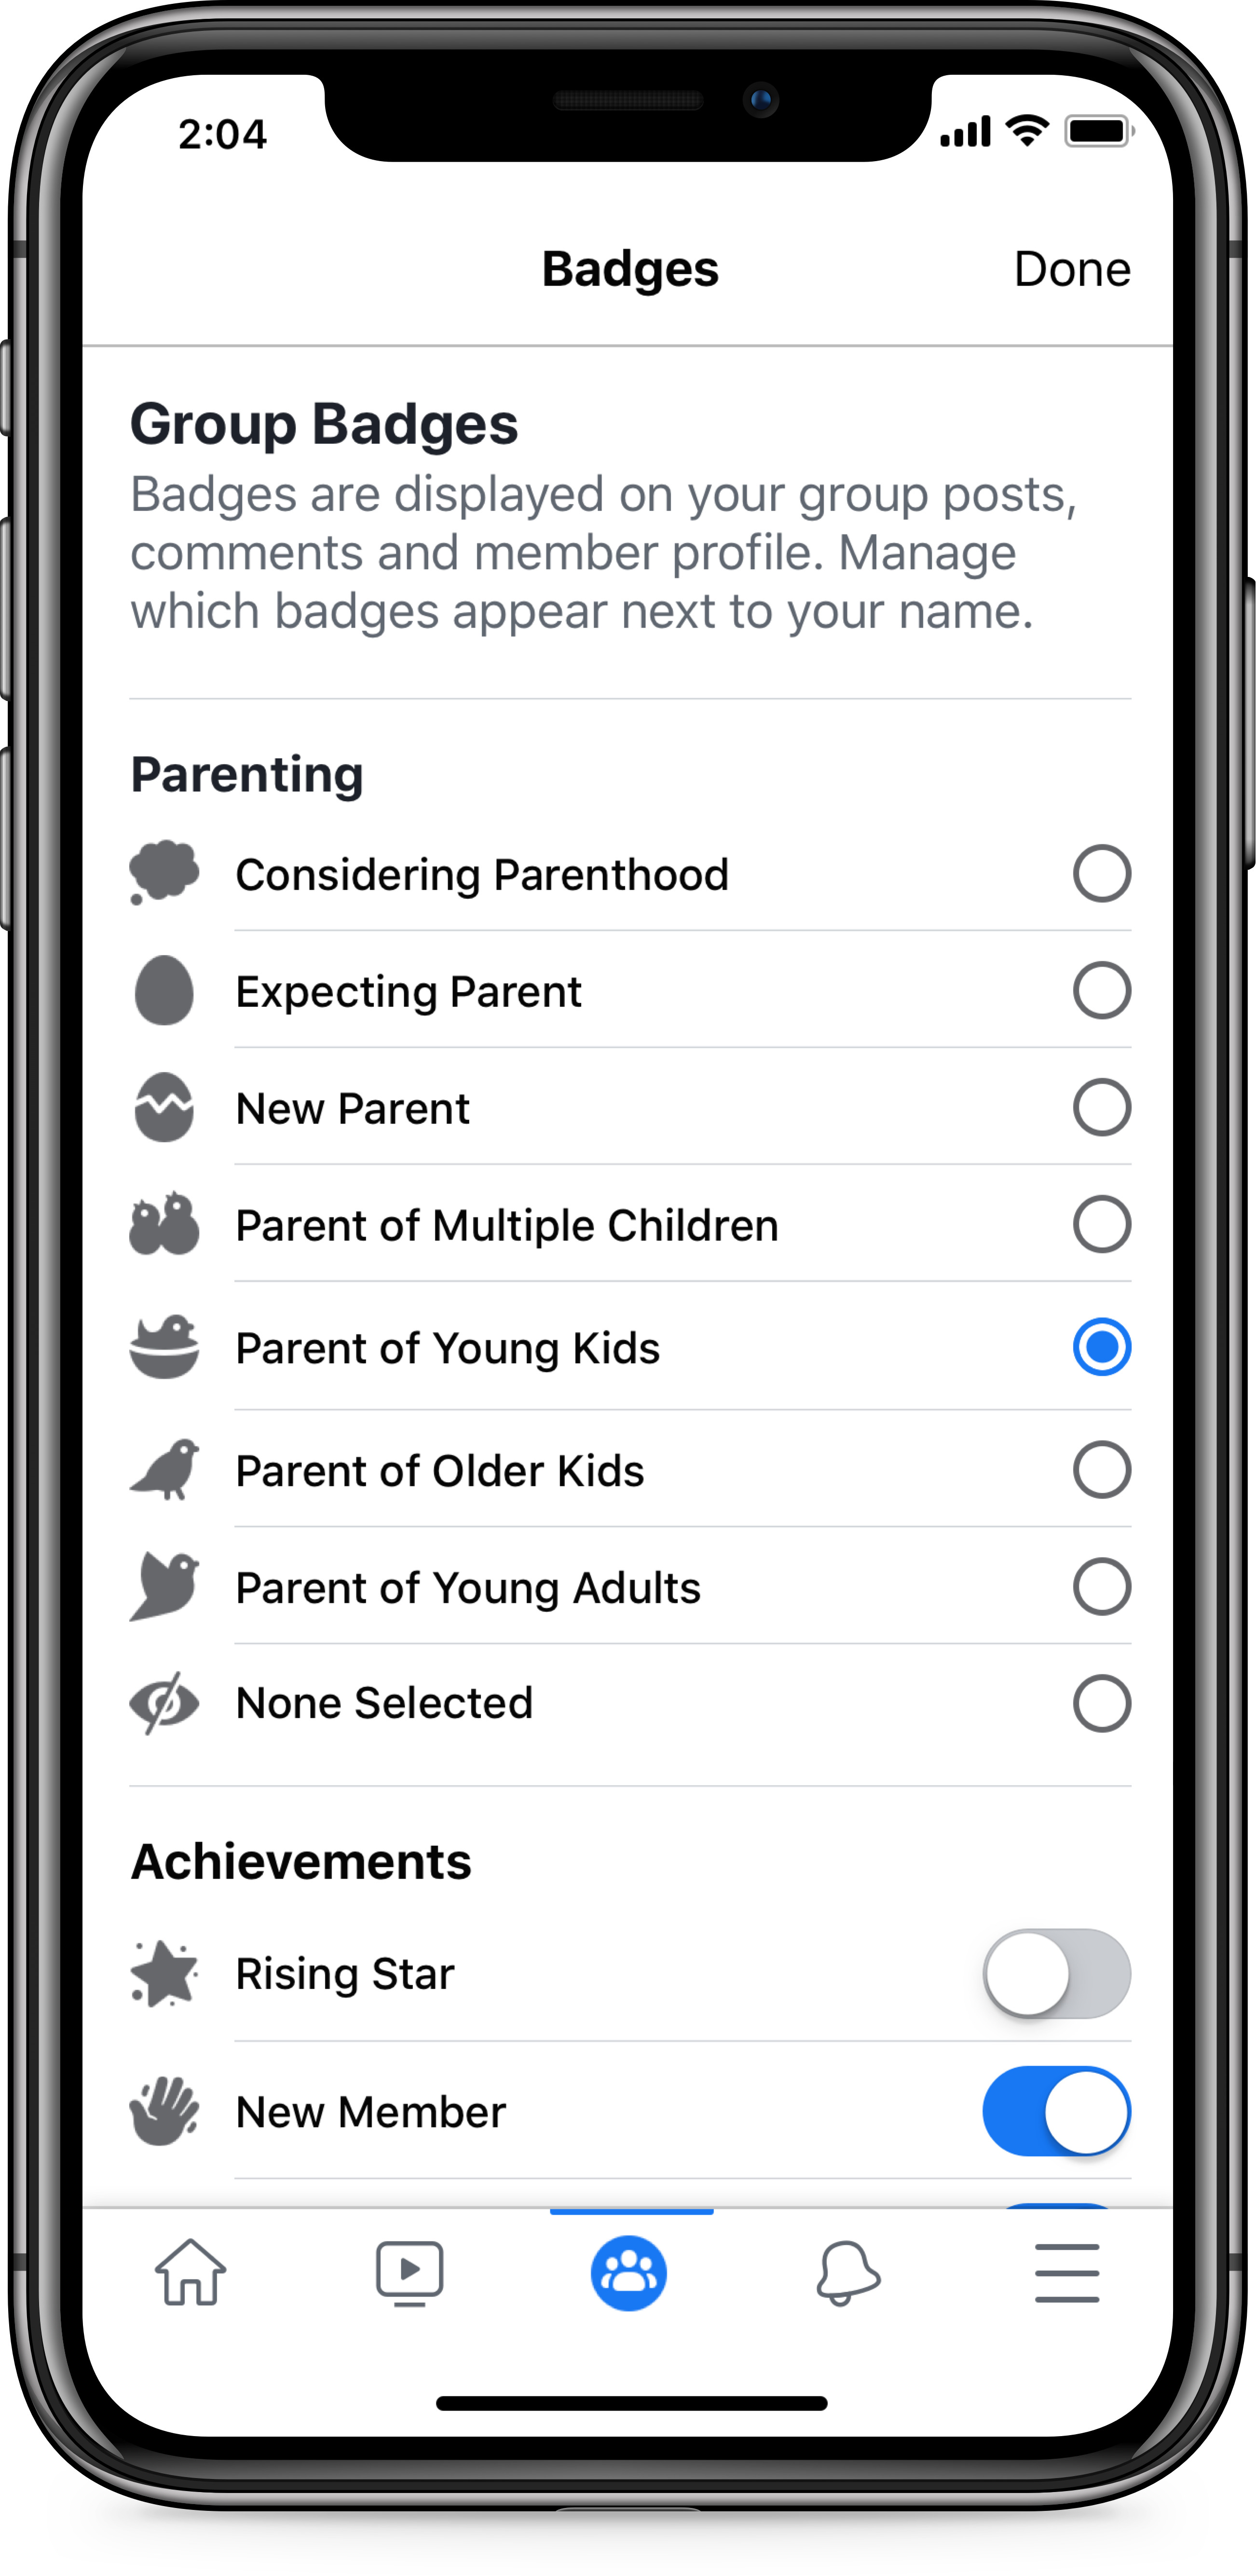 Facebook 推出新社團類型與三項功能協助家長探索及參與親子社群 史塔夫科技事務所